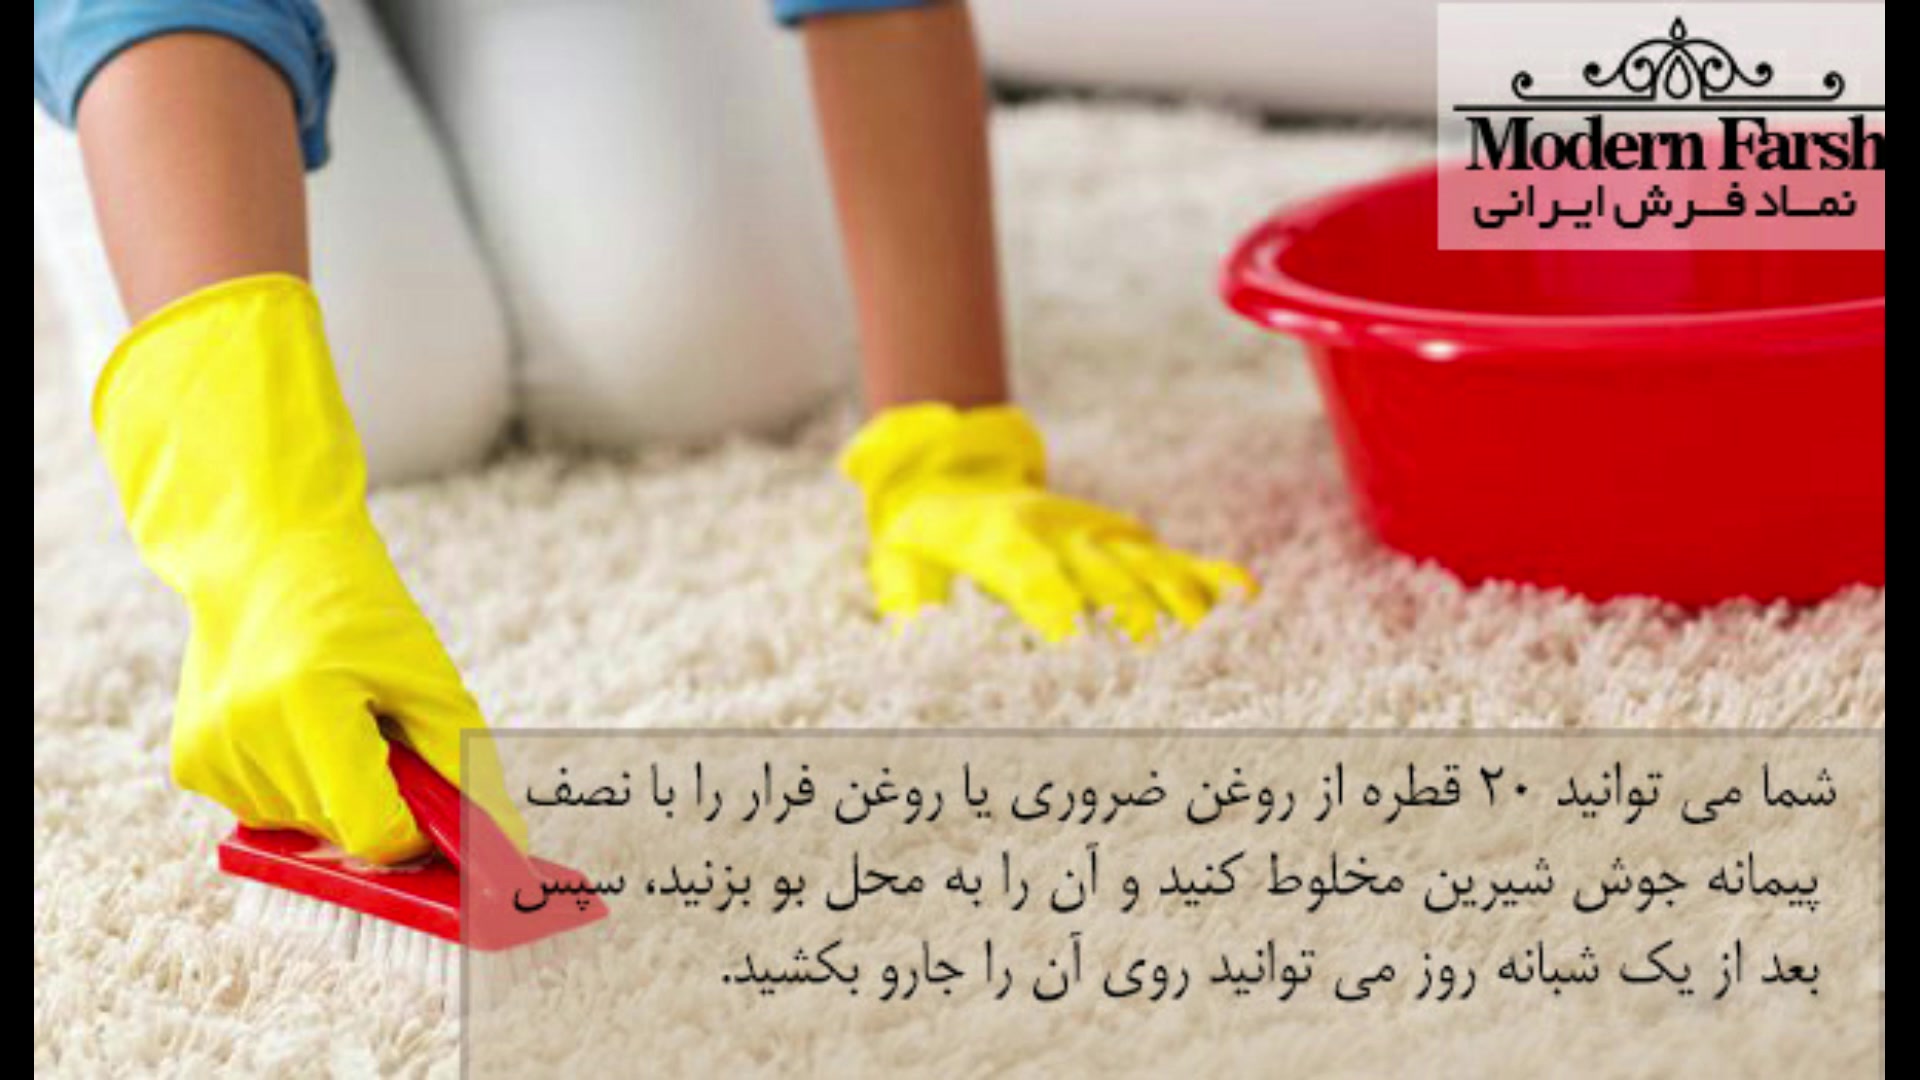 6 راه آسان برای از بین بردن بوی نامطبوع فرش